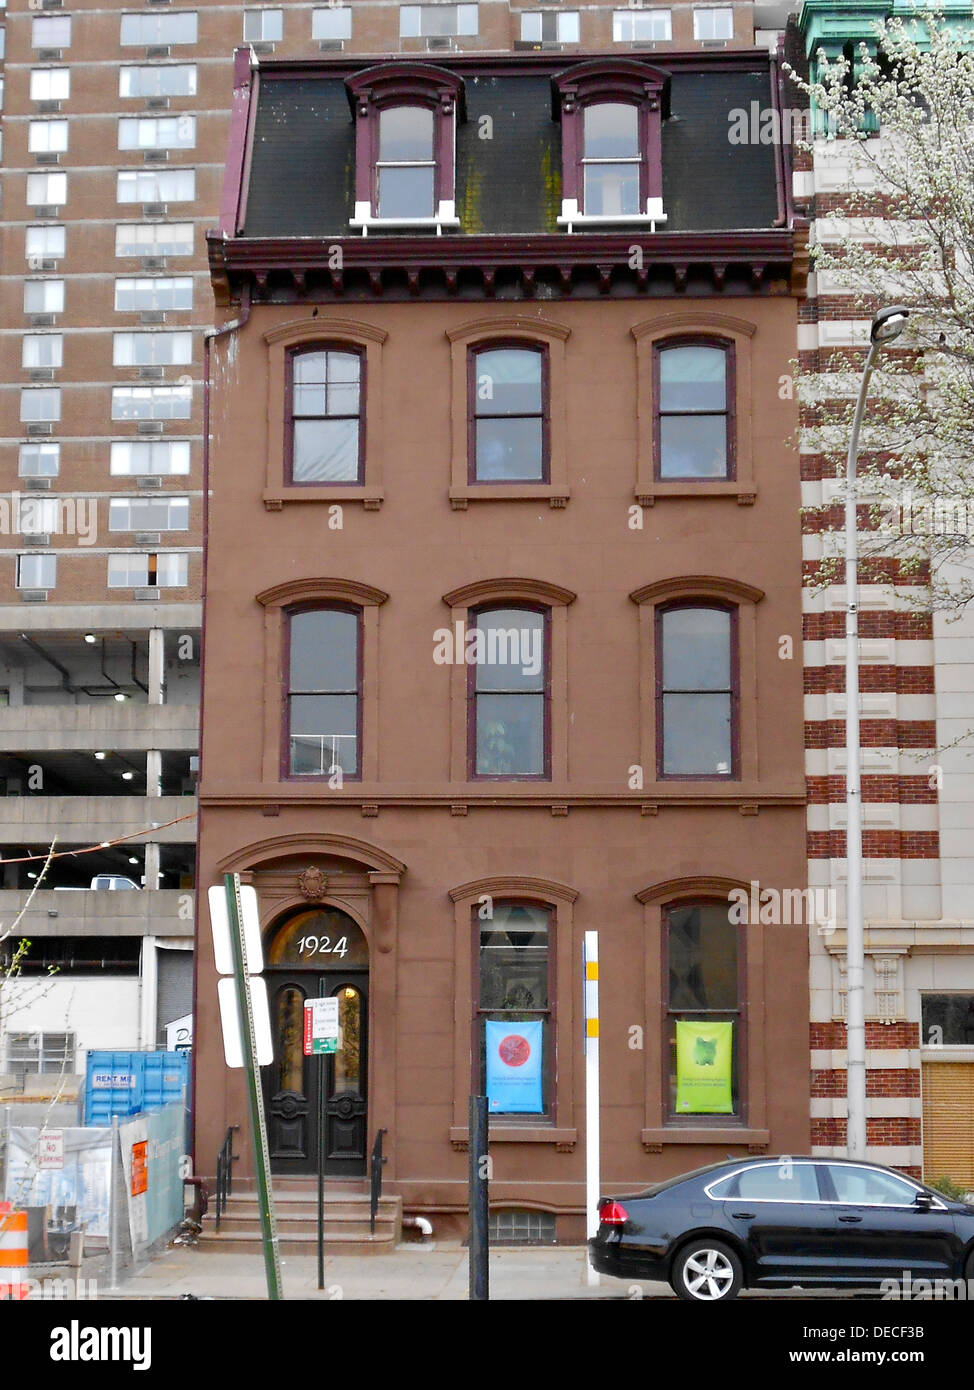 Francis McIlvain Maison sur la PNSR depuis le 20 novembre 1979. En 1924 Arch Street dans le quartier de Logan Square Centre Ville Ville, Philadelphie Banque D'Images